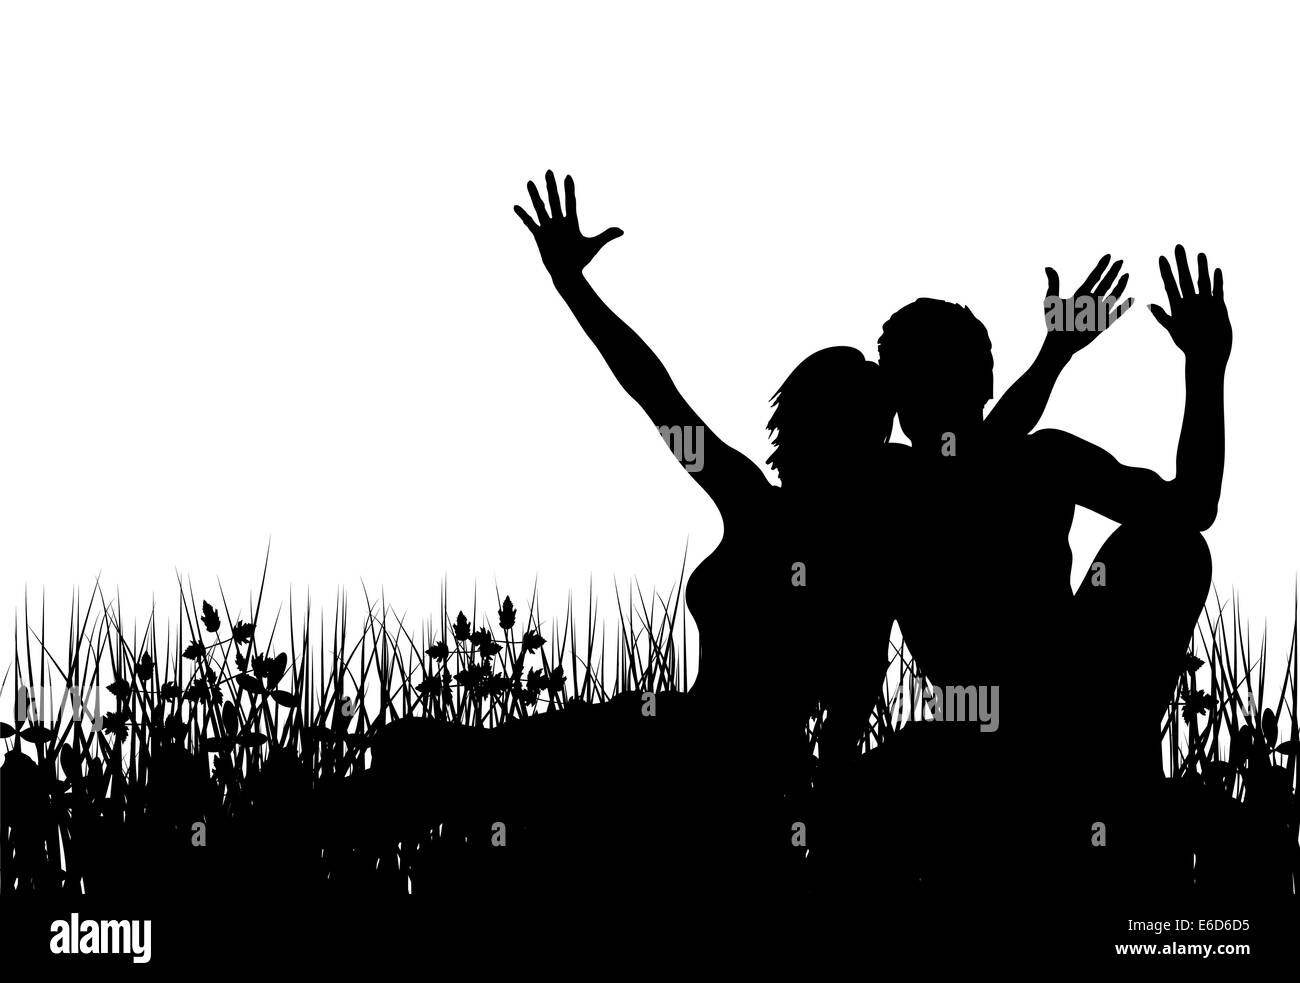 Silueta vectorial editable de una pareja sentada en un prado con personas como elementos separados Ilustración del Vector